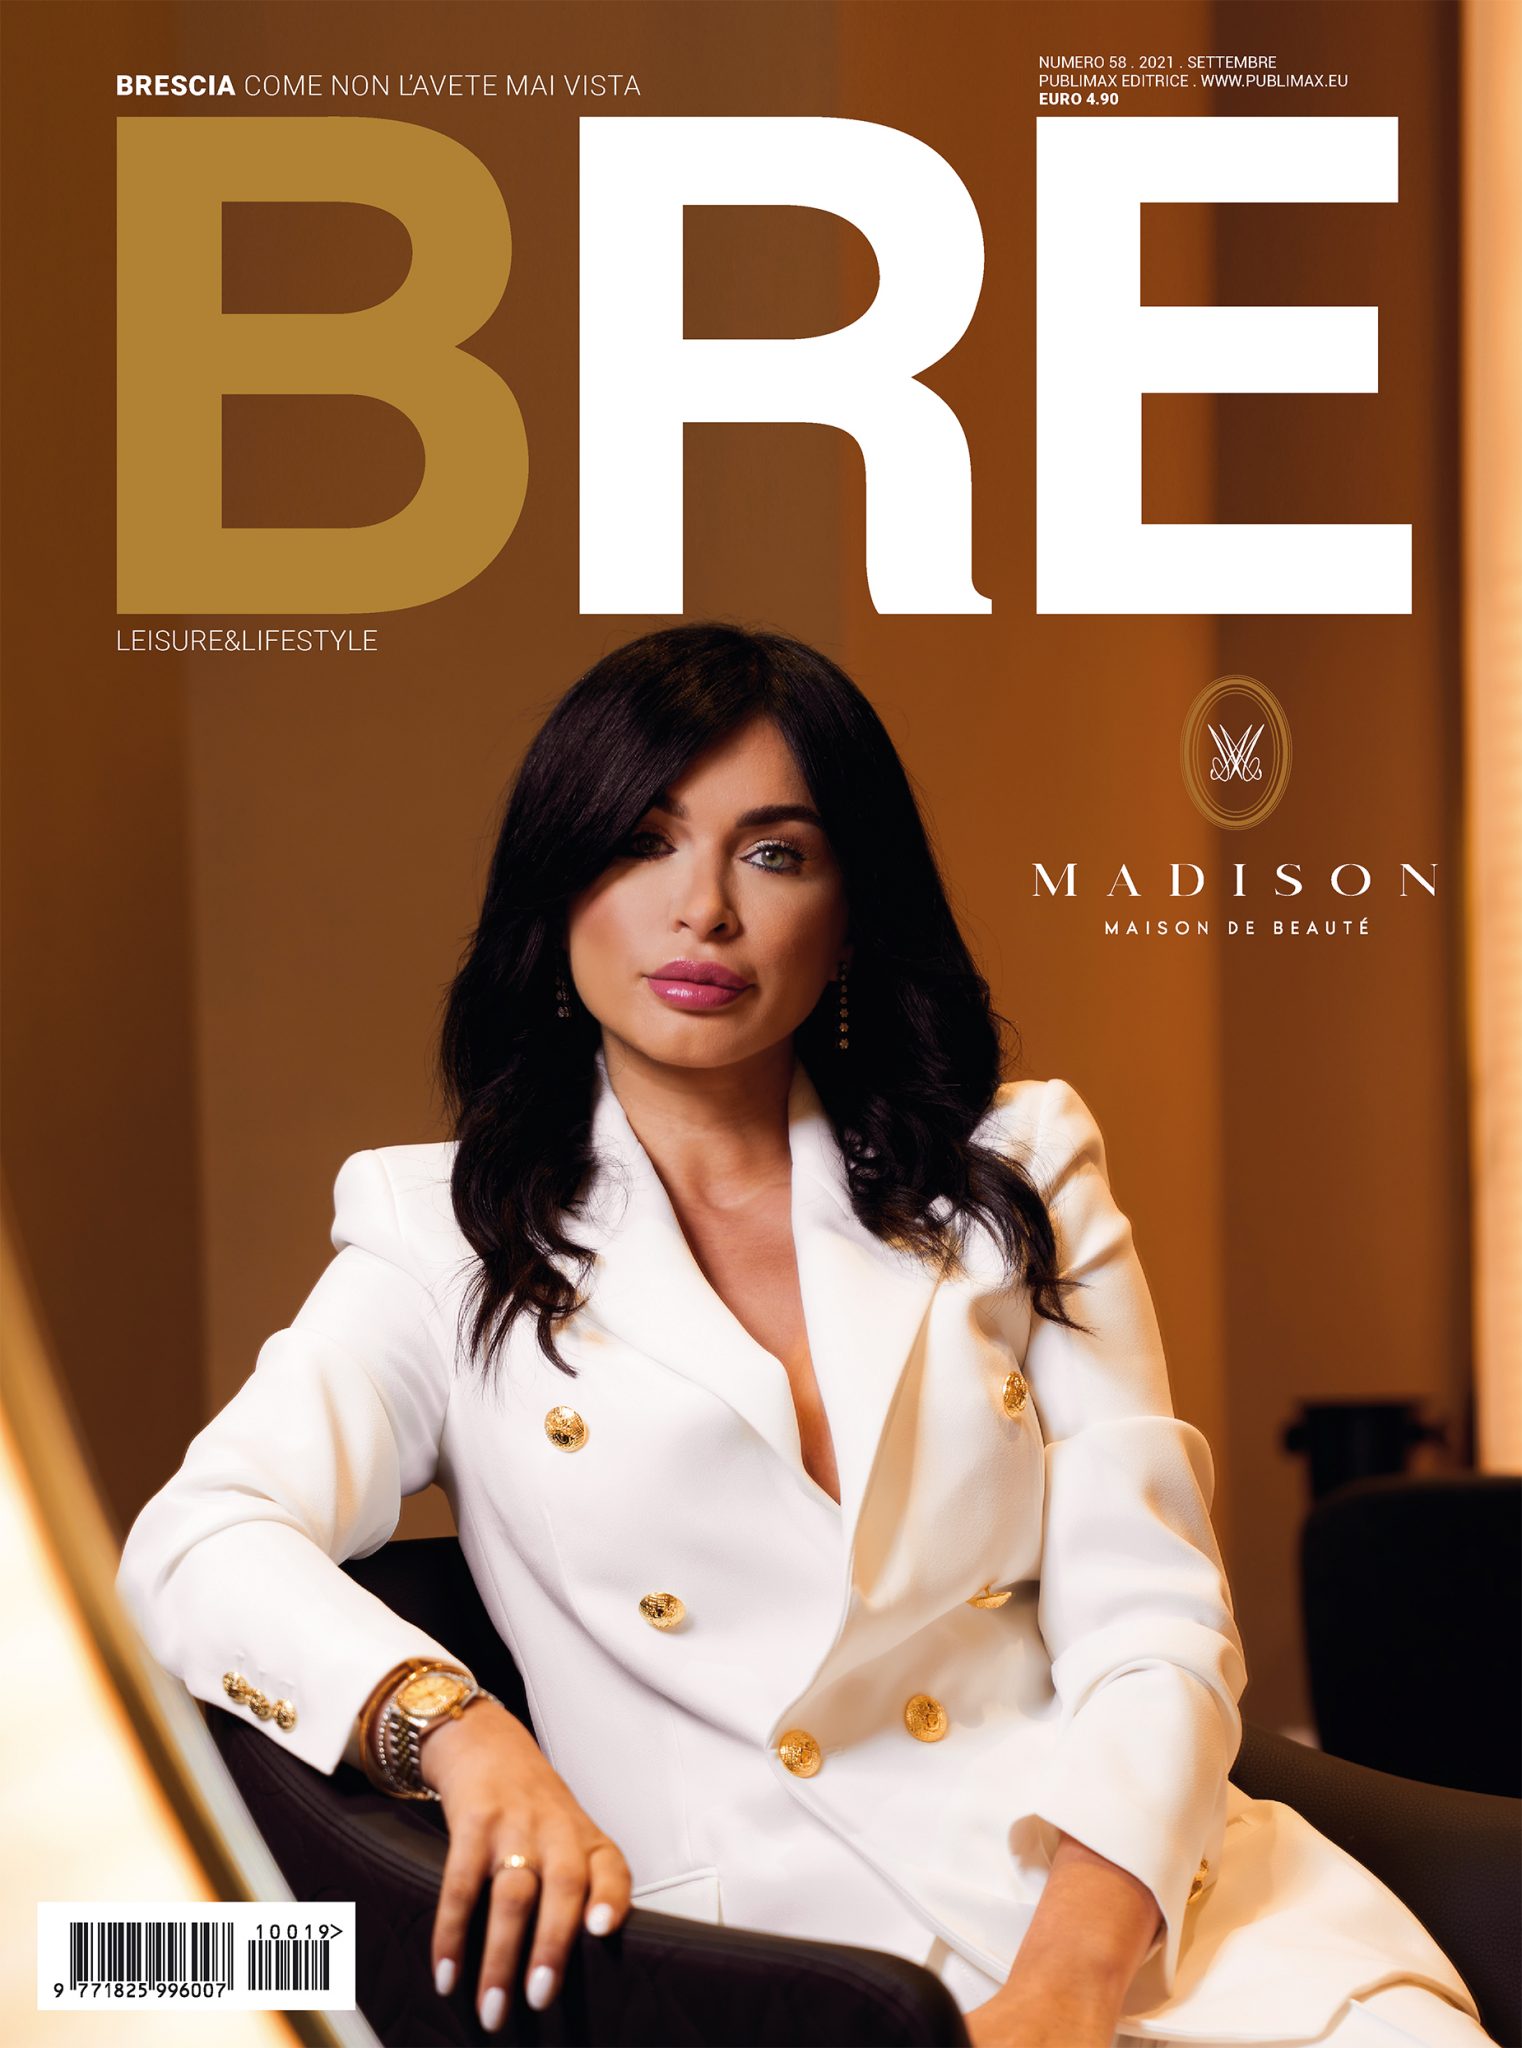 Madison Maison de Beauté, la copertina del mensile BRE Magazine di Settembre 2021